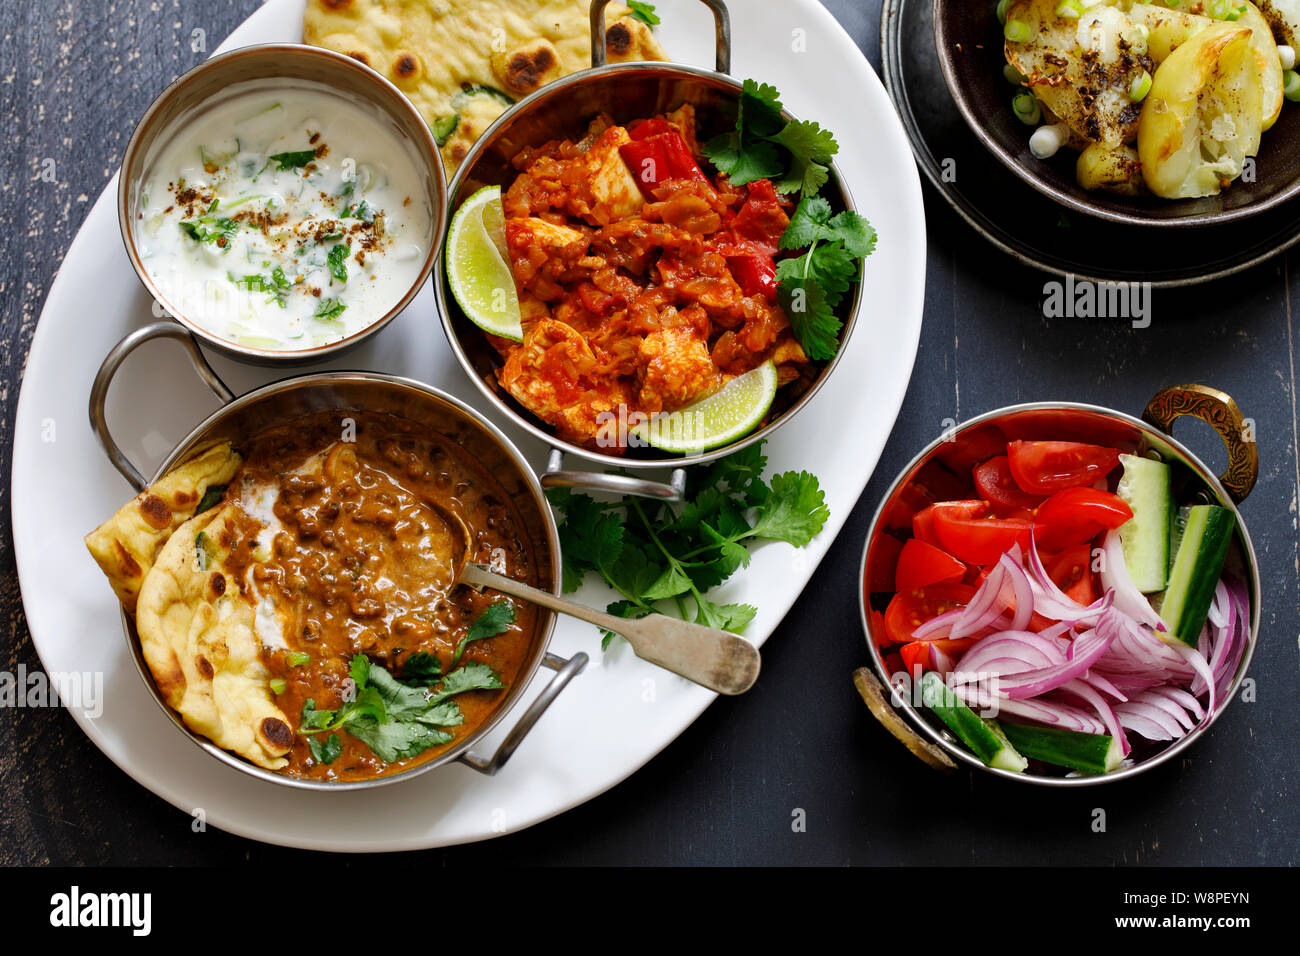 Repas curry indien noir avec les lentilles dal, épicé de pommes de terre, riz, pain naan et raita Banque D'Images